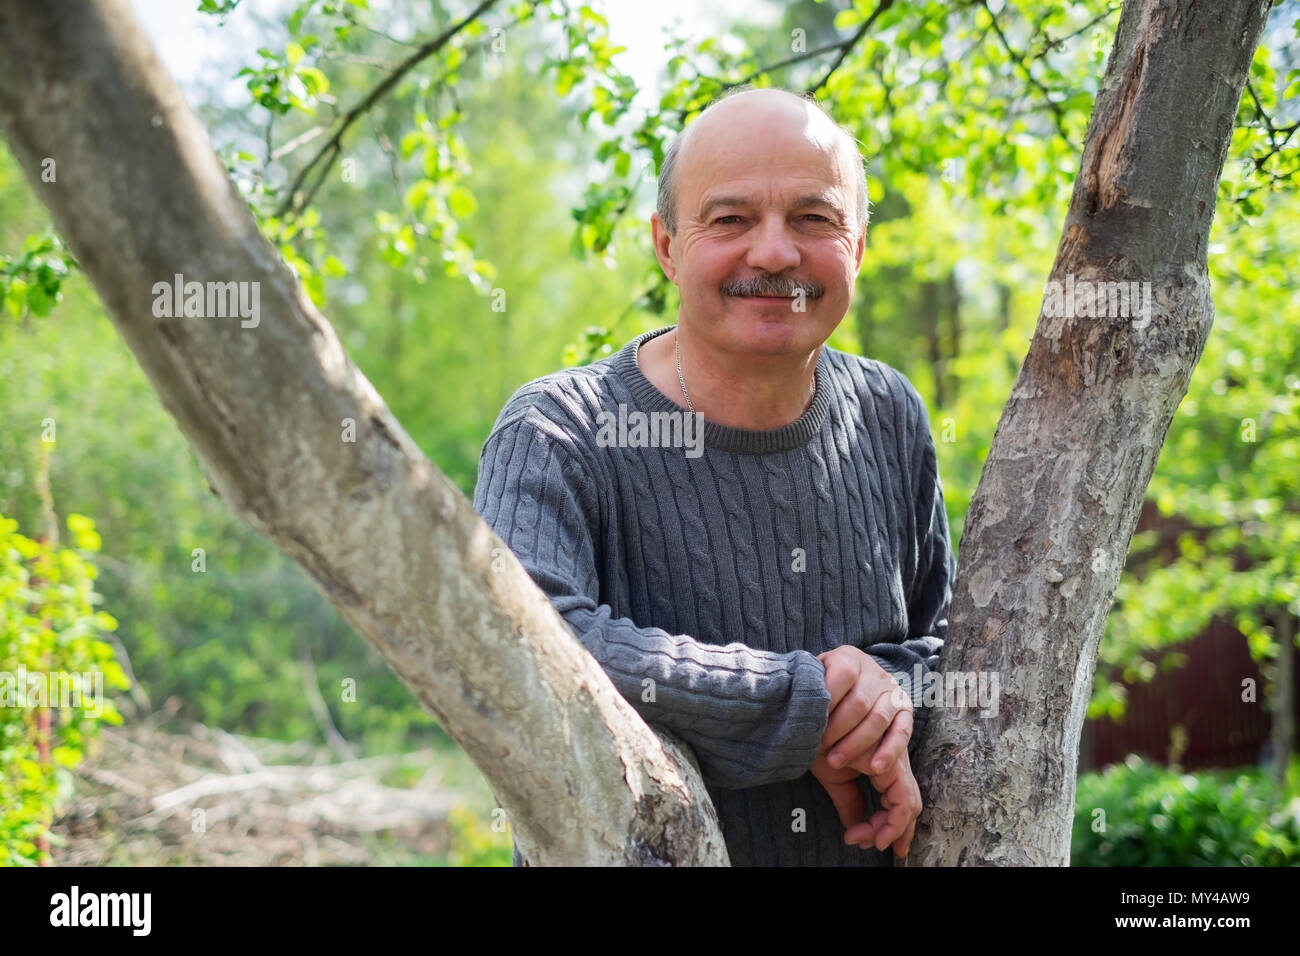 Portrait of male gardener près d'arbre fruitier. Banque D'Images